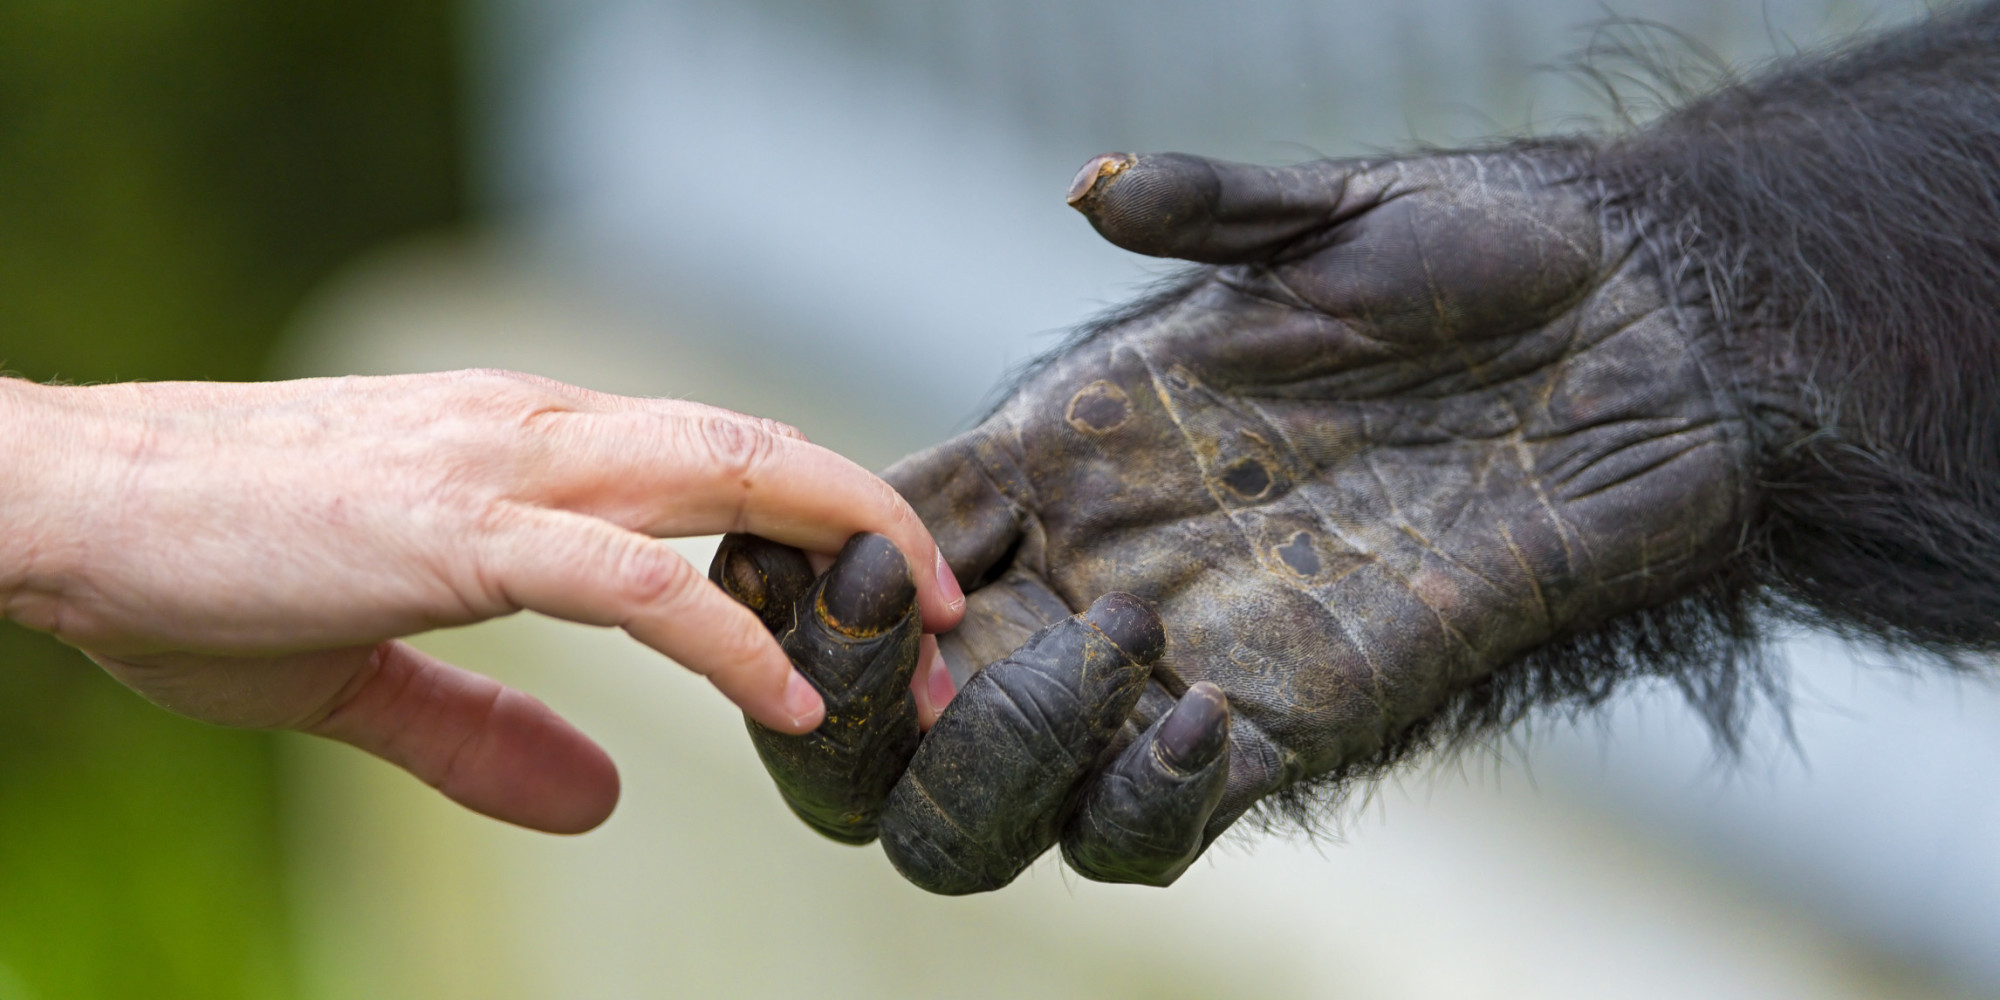 Эволюция человеческих рук и ног, вероятно, происходила одновременно